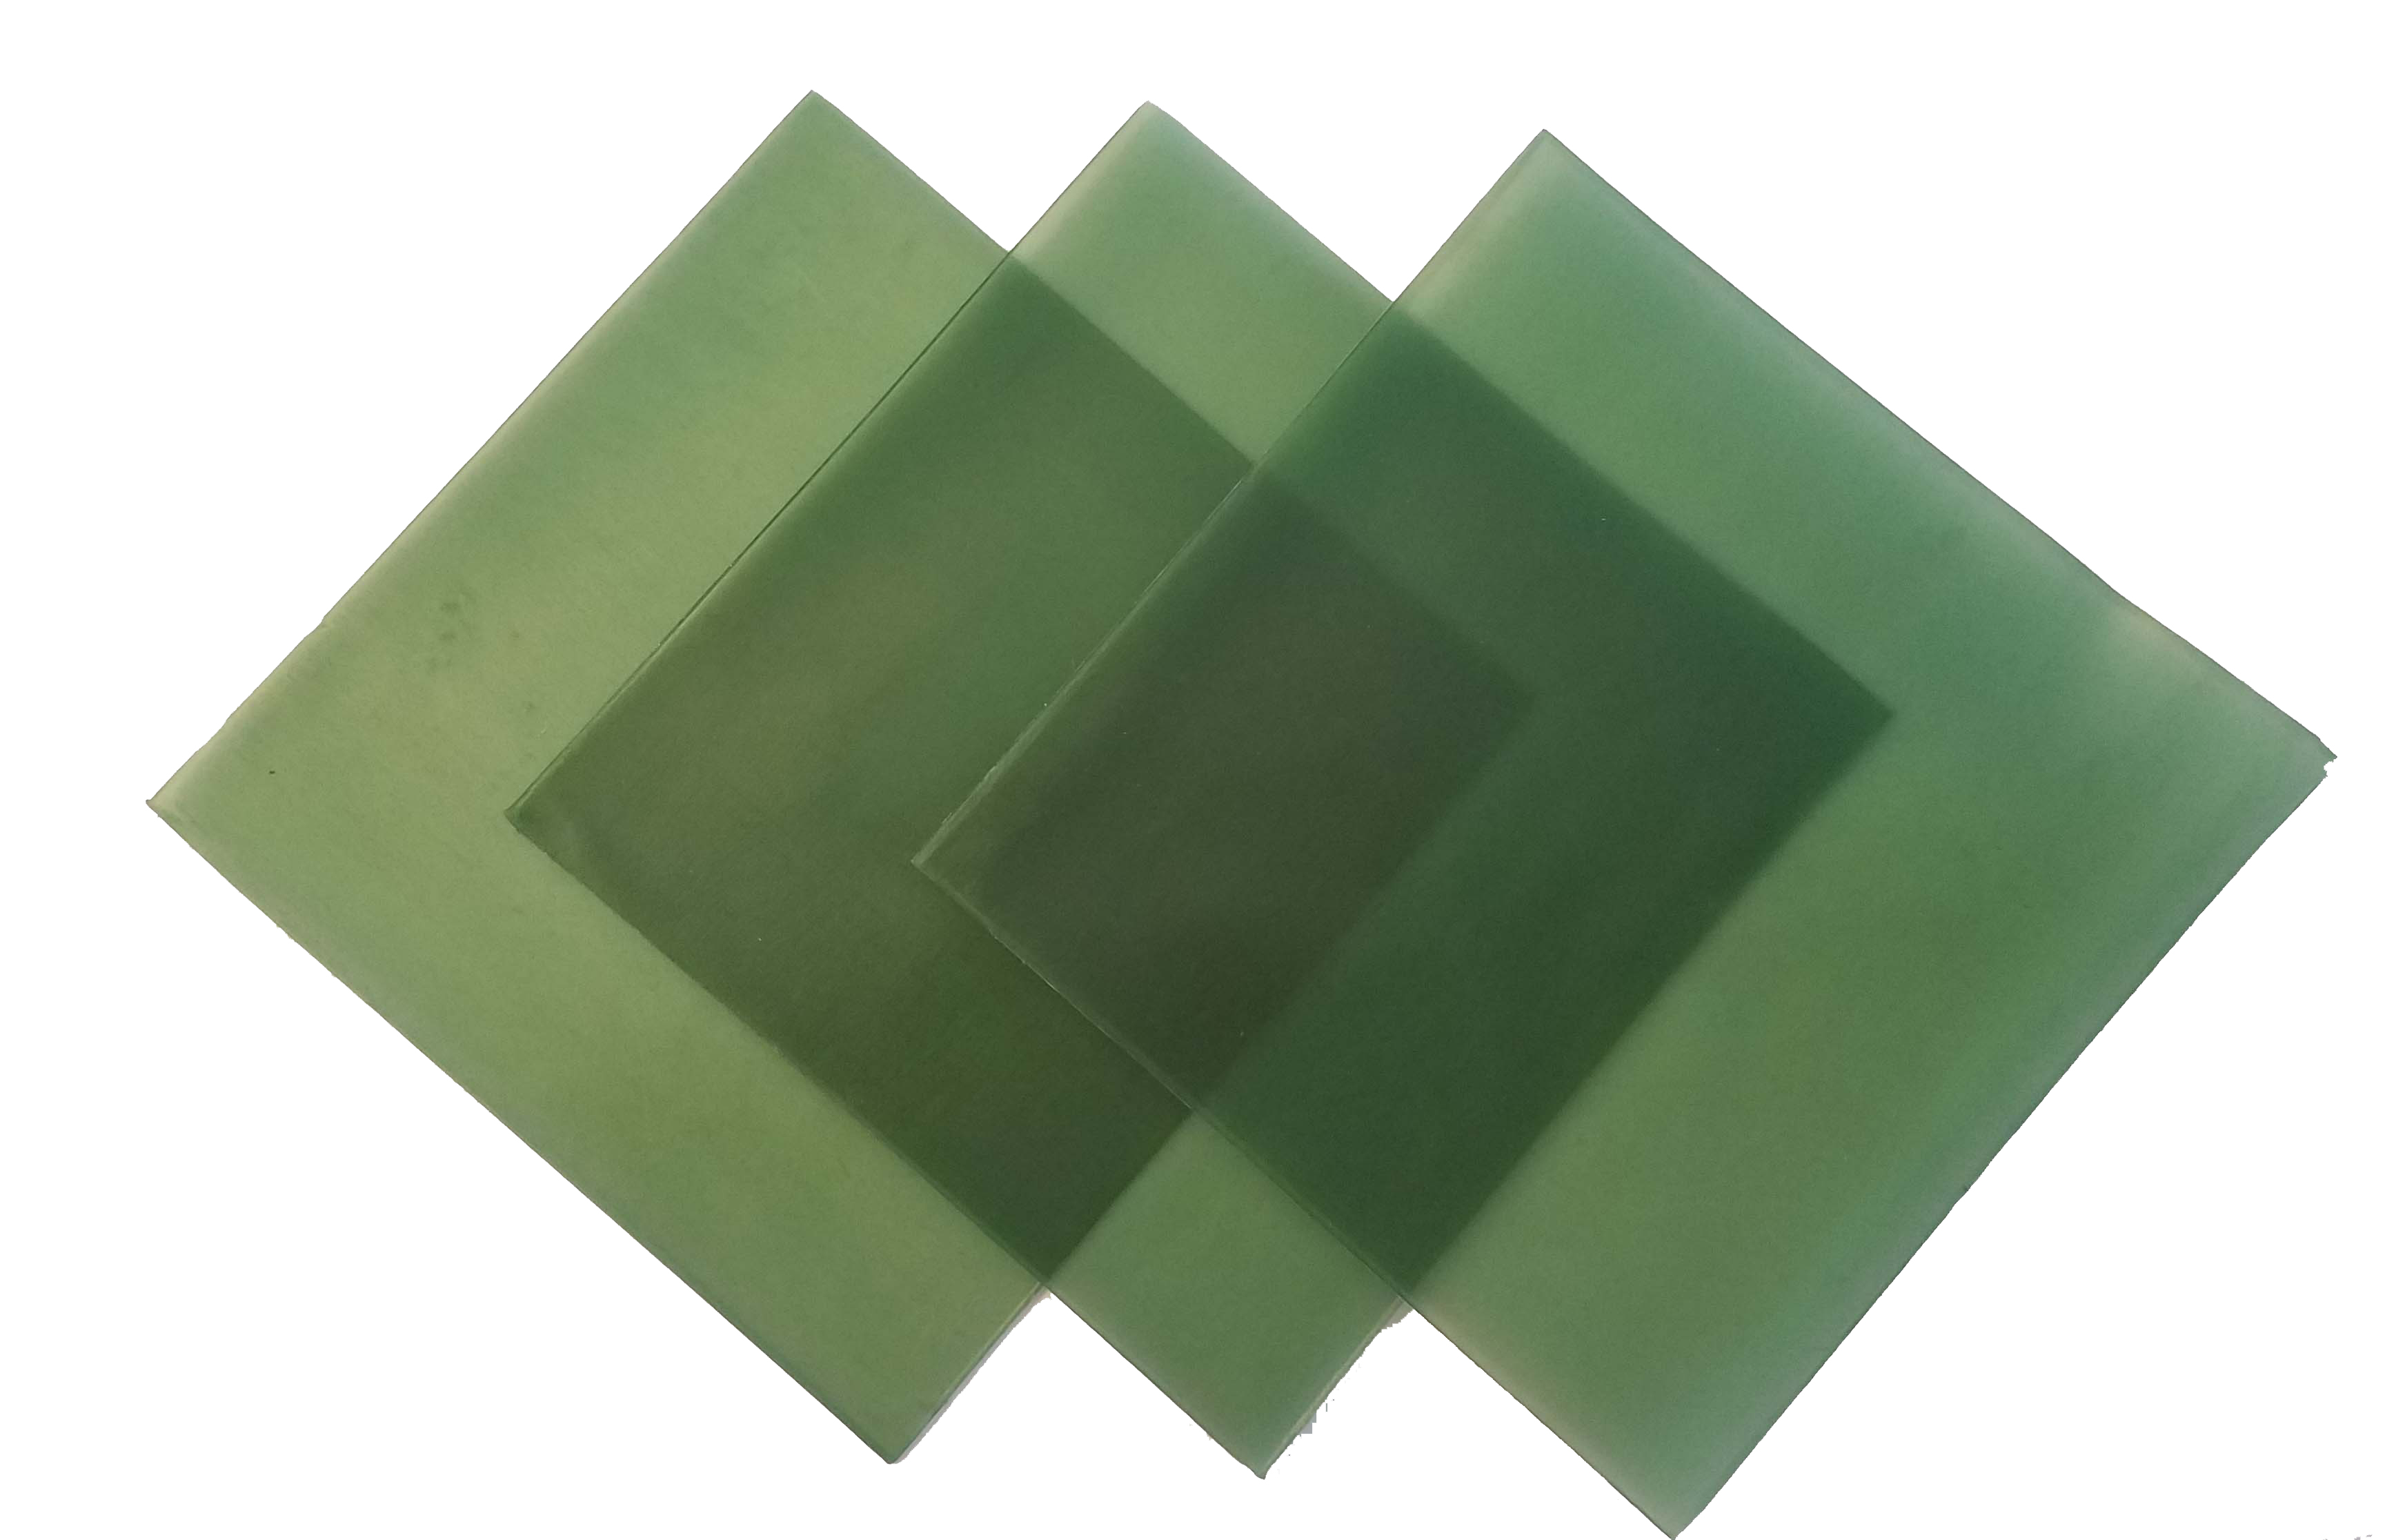 4"x4" sheet wax 25 gauge green